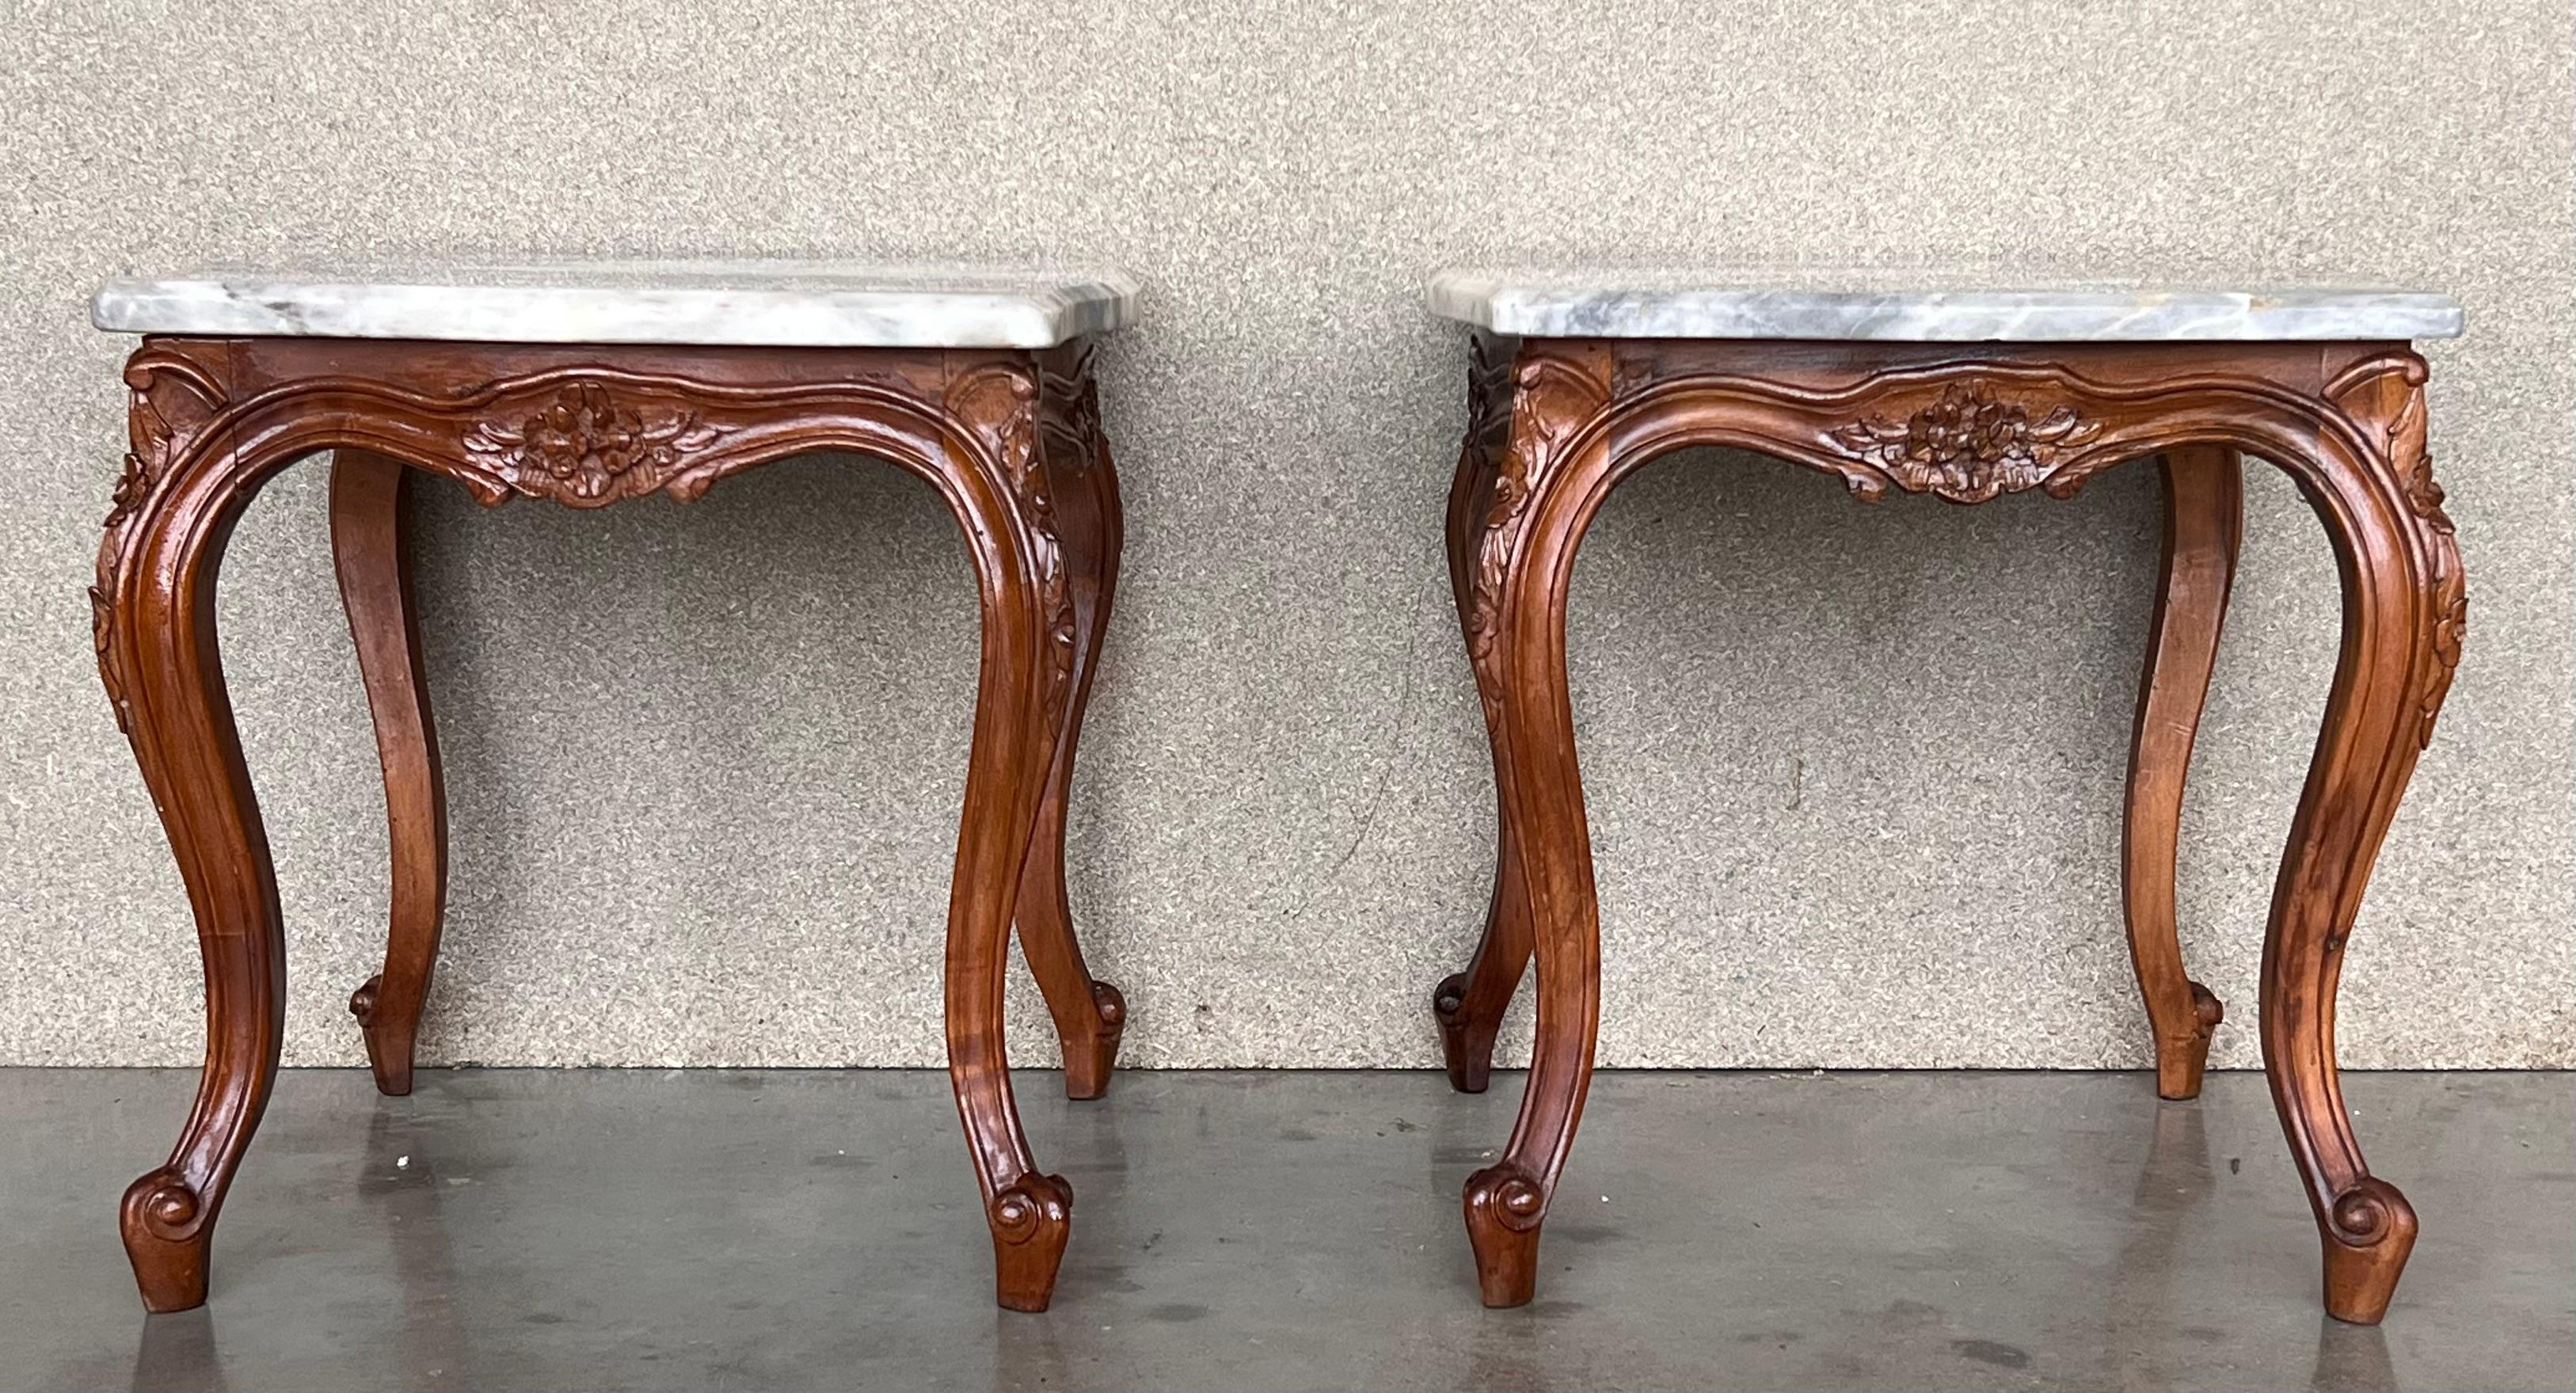 Dieser elegante Satz von Tischen im Stil Louis XV mit Marmorplatte, Struktur aus Nussbaum, mit vier verjüngten Beinen. 

